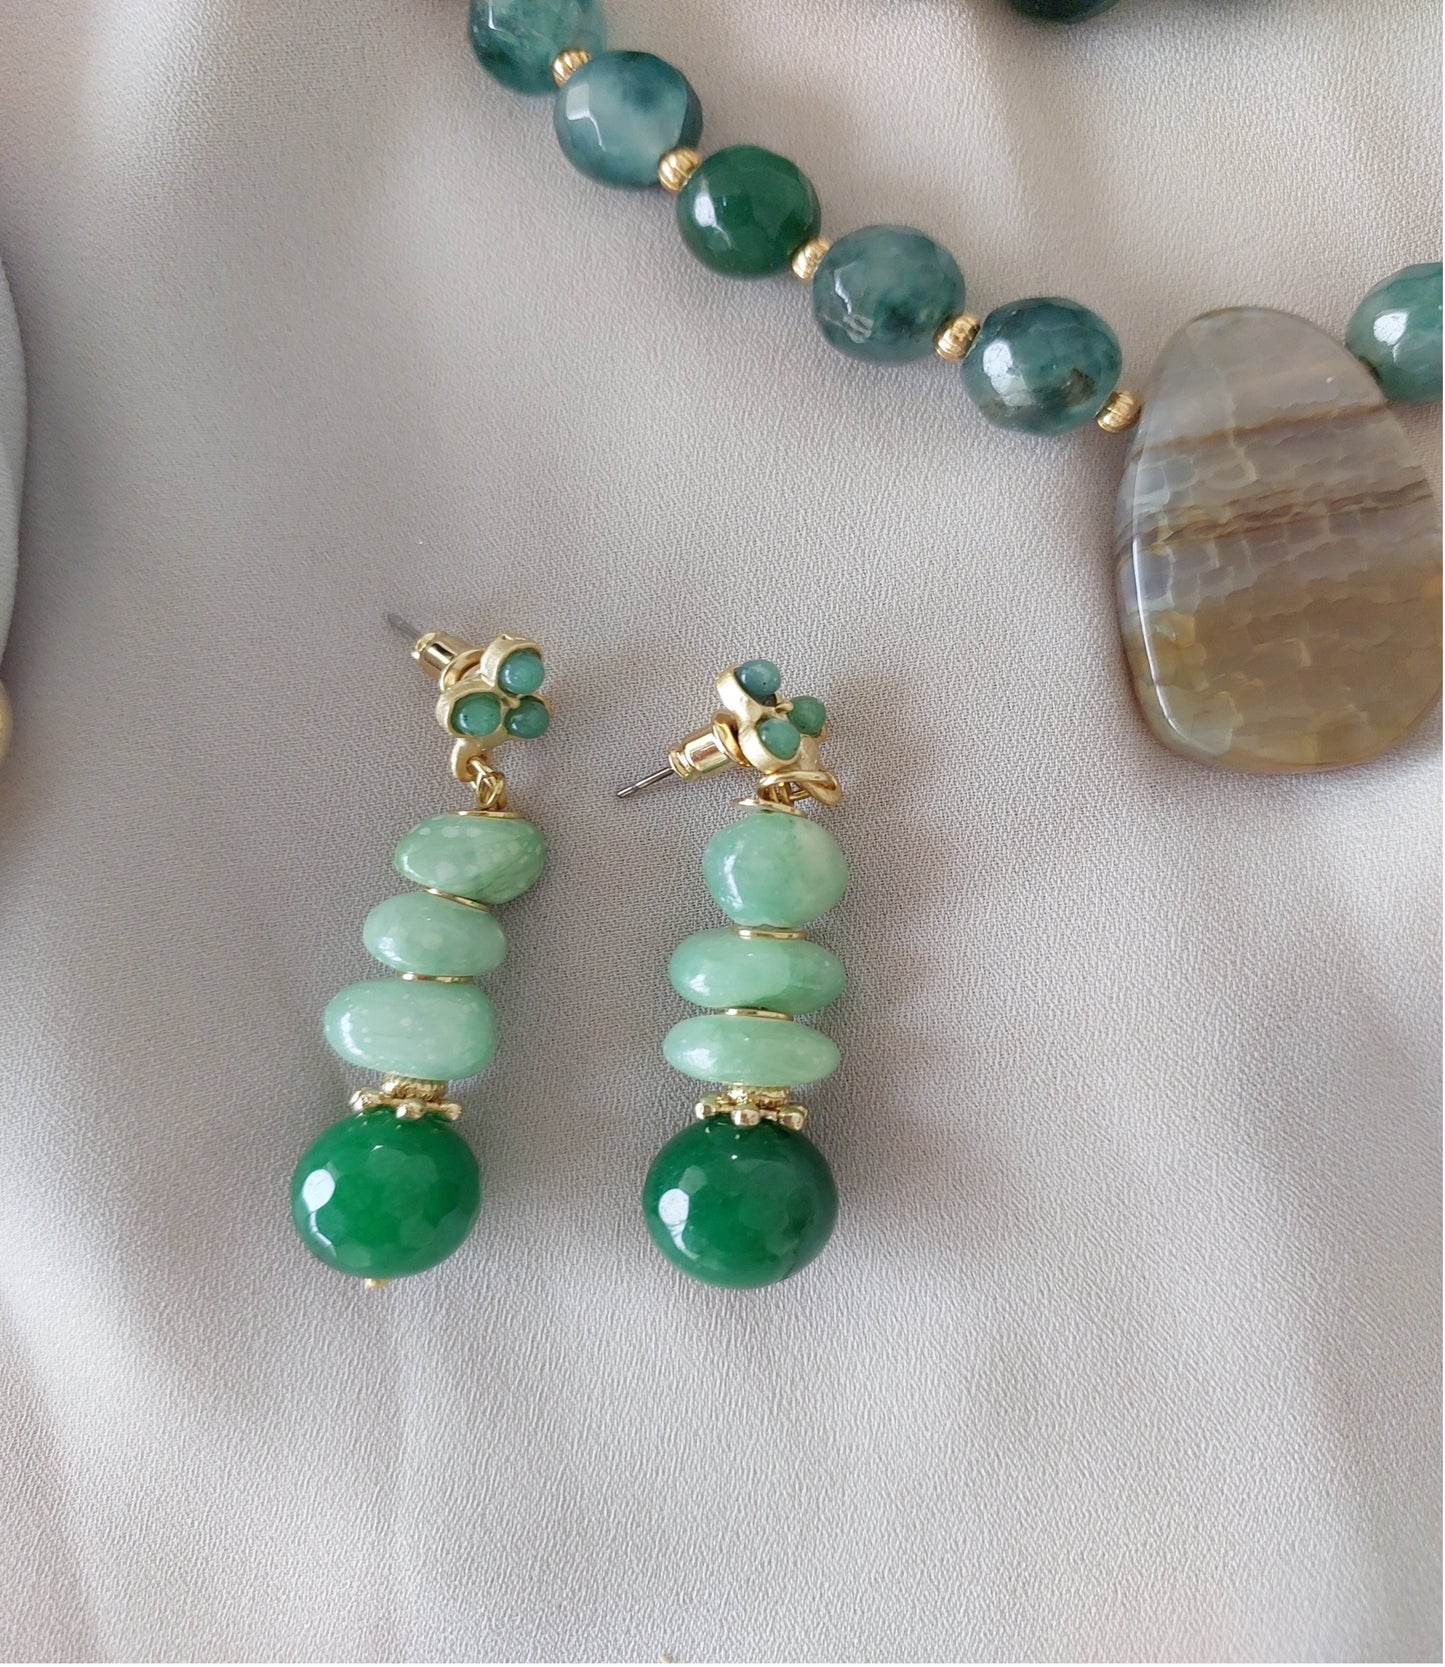 Conjunto de Joyas Collar y Anillo hecho a mano Piedras Preciosas Ágata Verde Malaquita Gran Regalo para Mujer